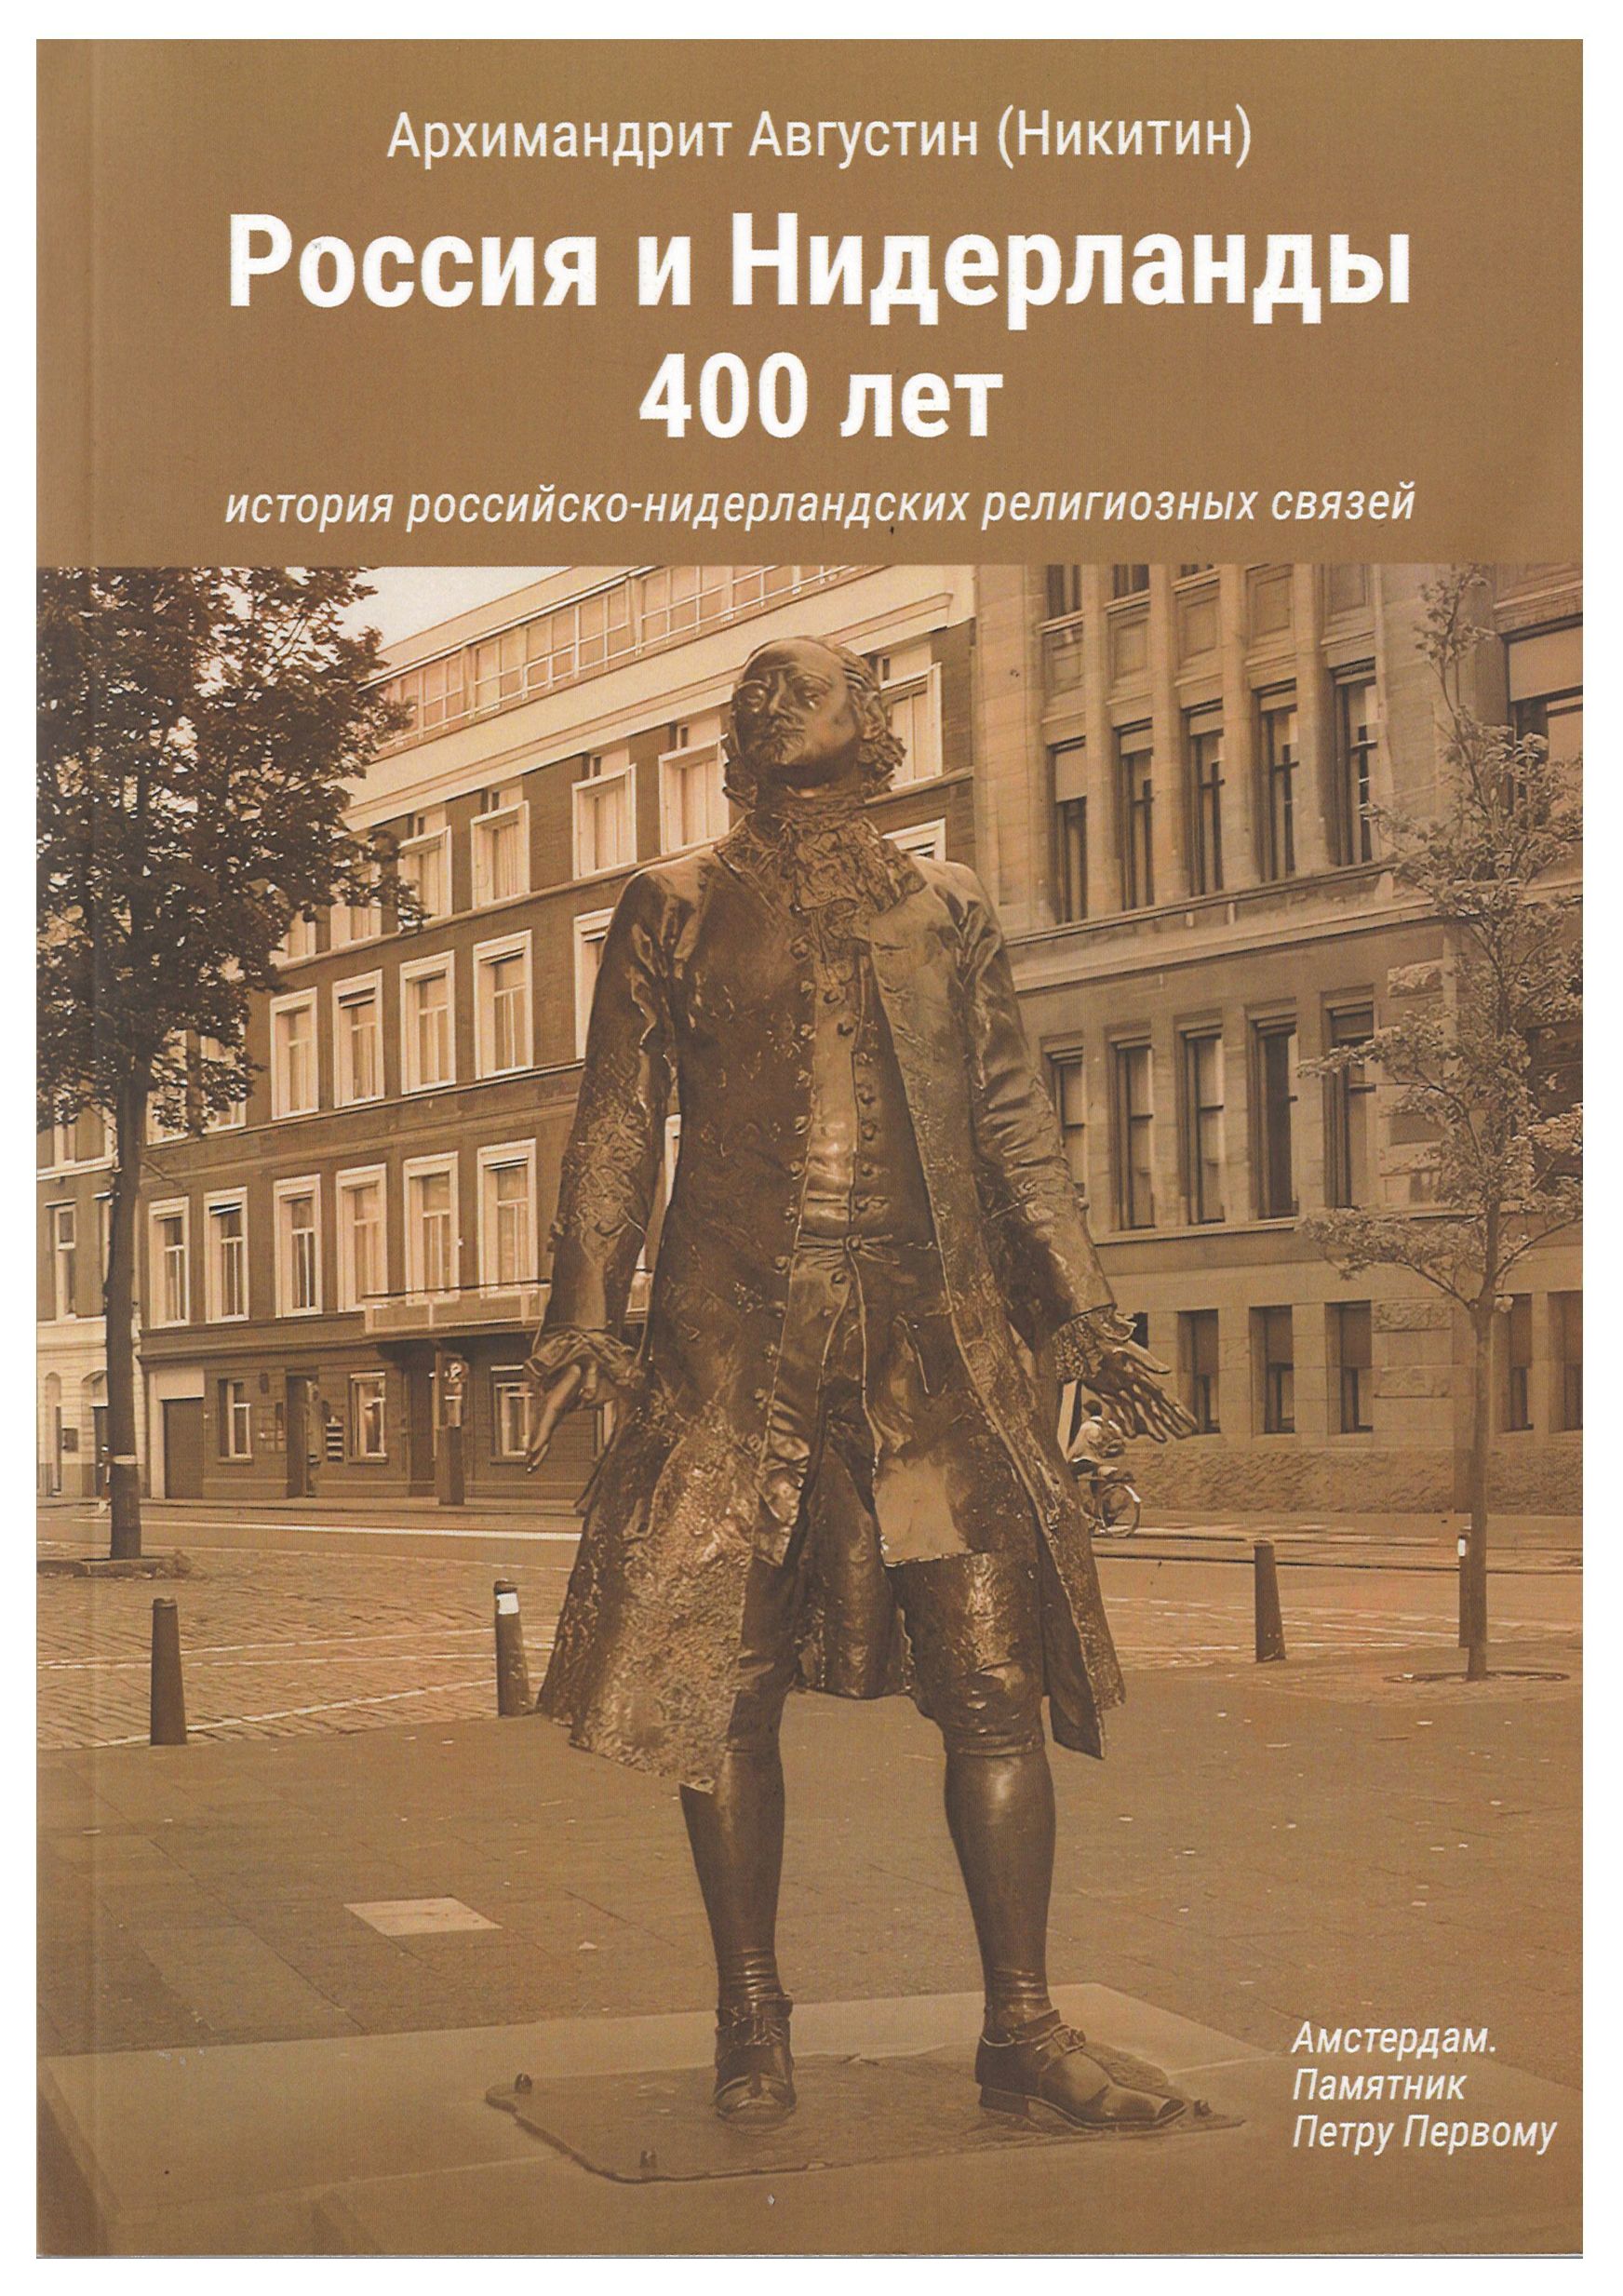 Архимандрит Августин - Россия и Нидерланды 400 лет